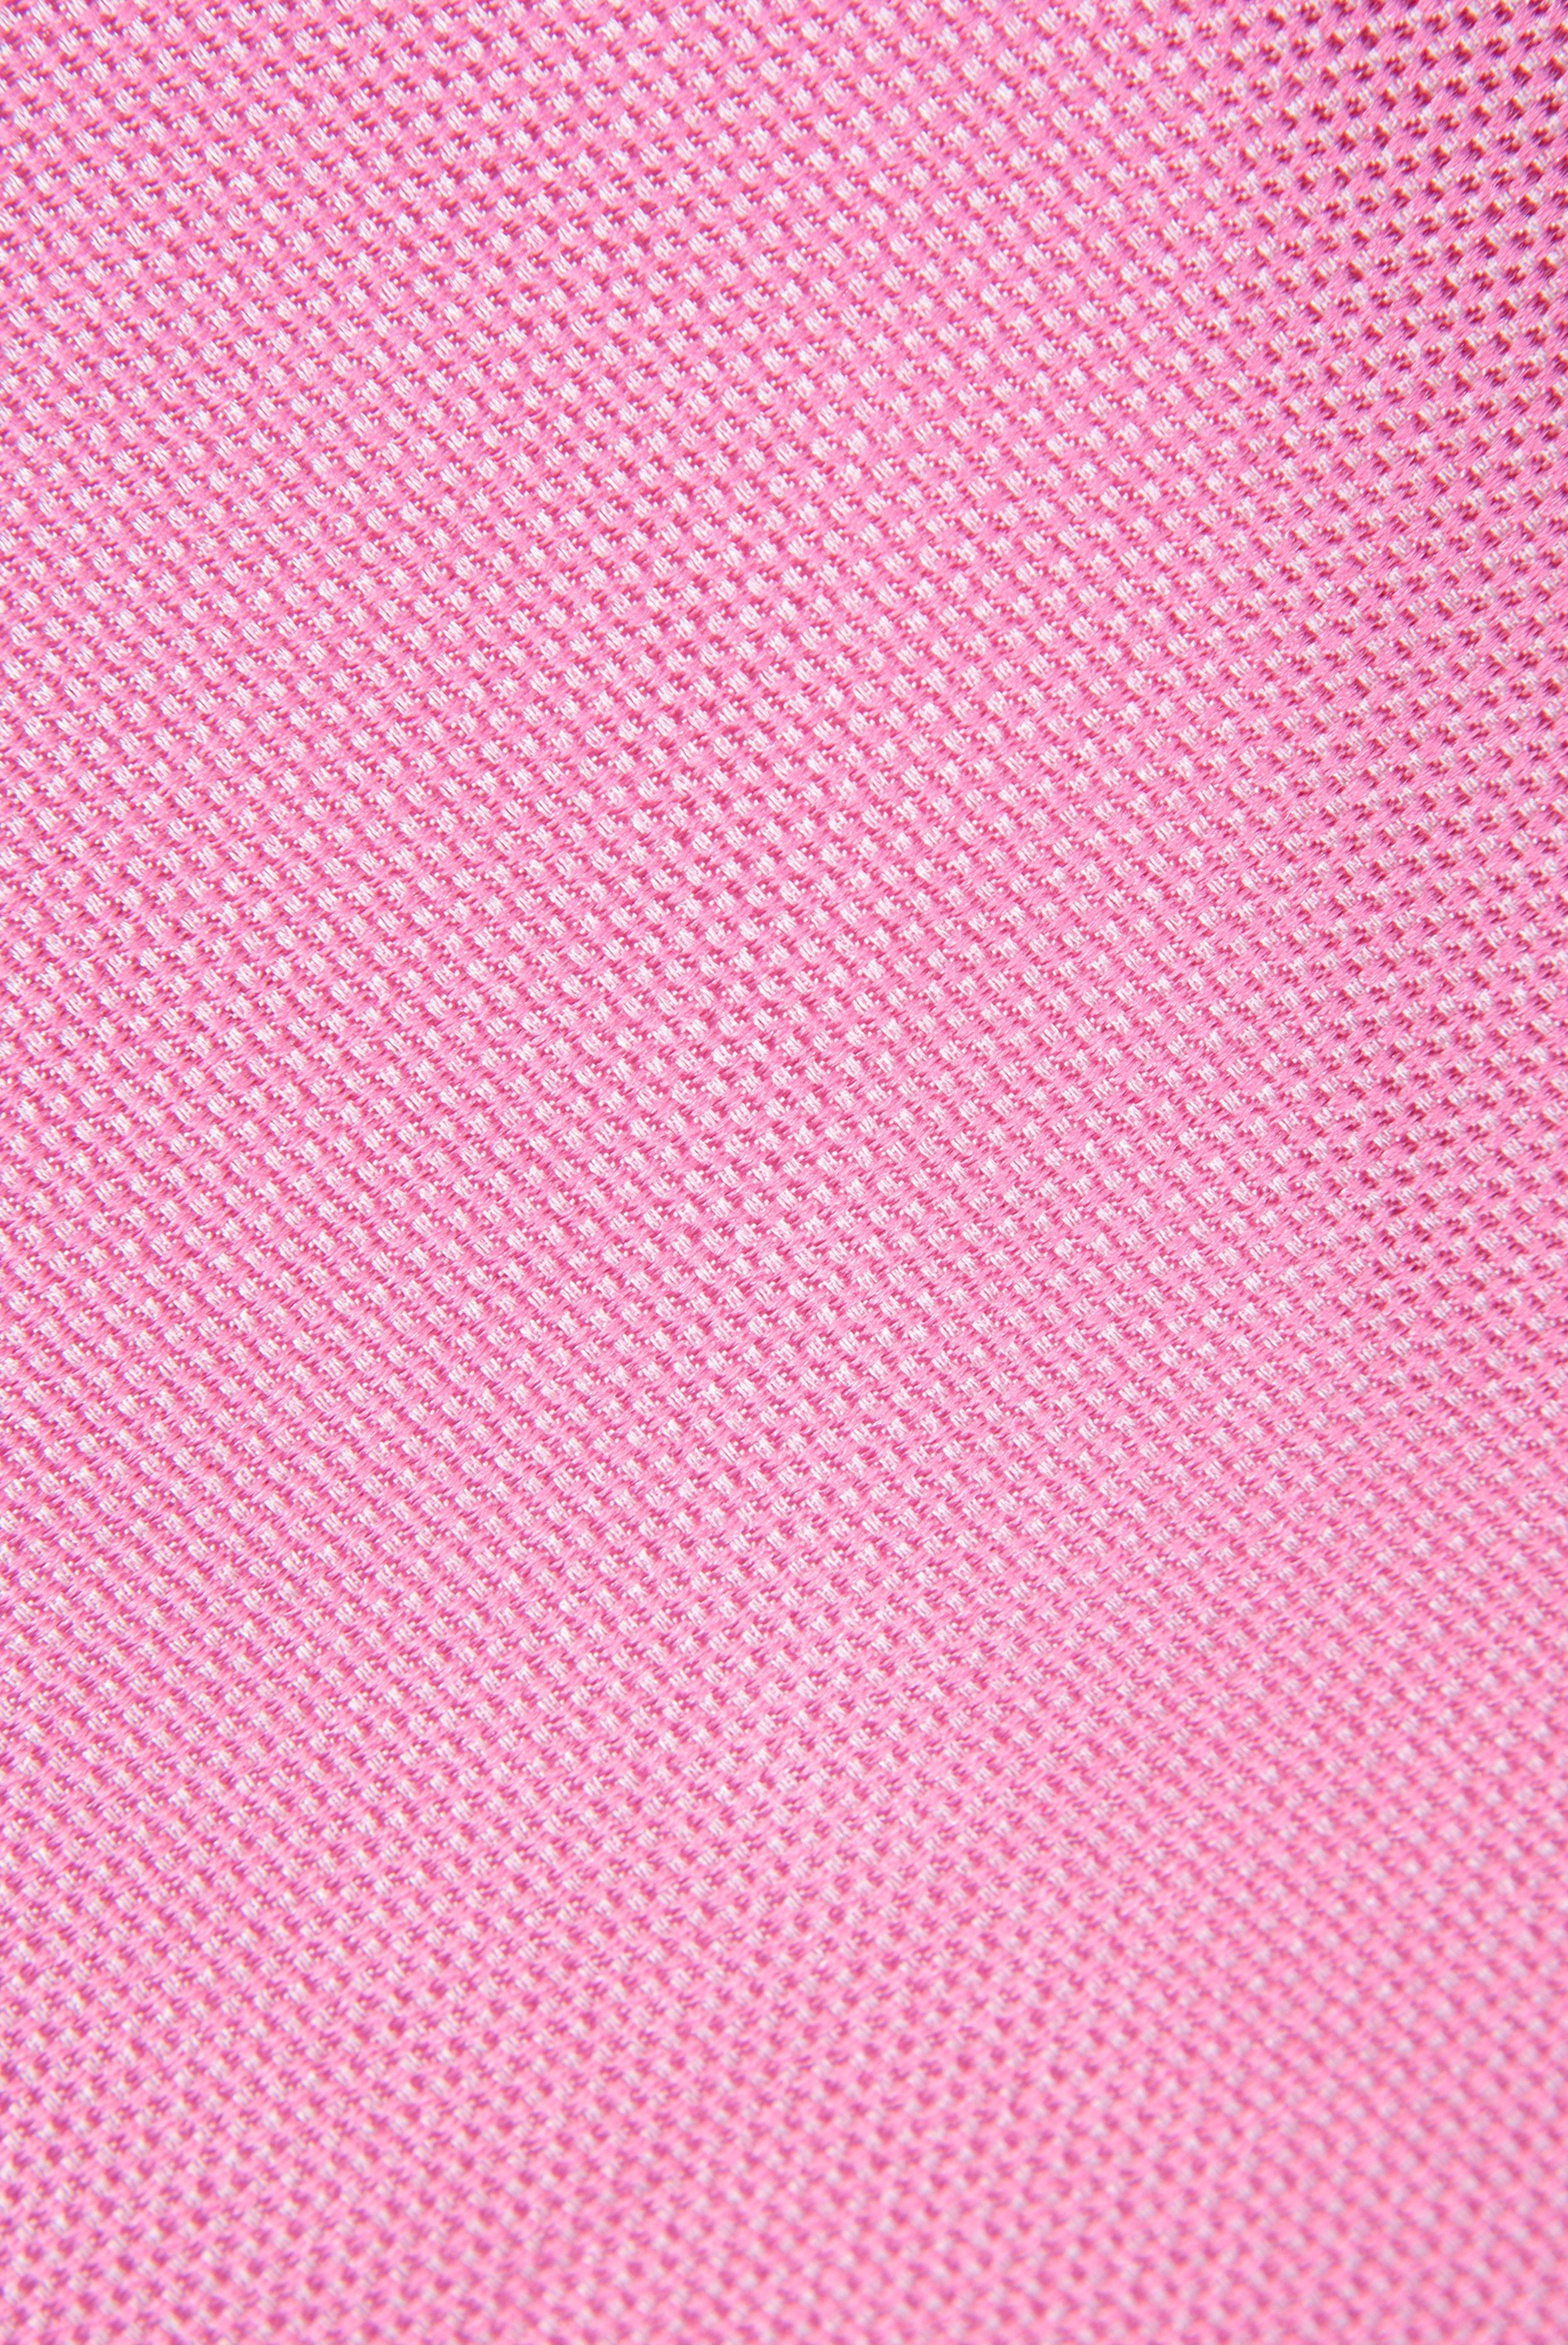 галстук LEROY розовый LEROY_K03906_520 ,photo 2